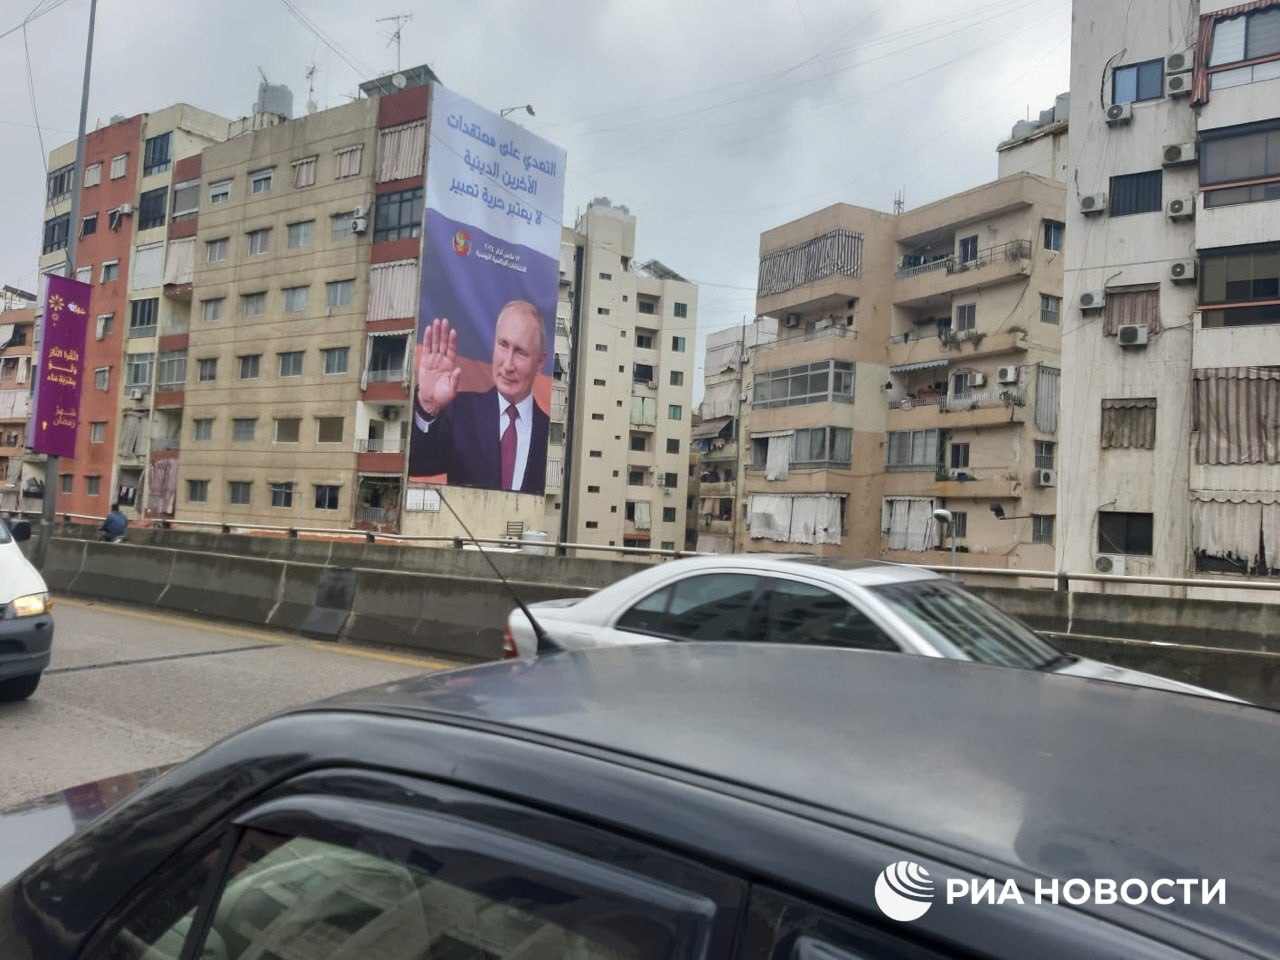 مقولة شهيرة لبوتين وصورته والعلم الروسي تتصدر لافتات في ضاحية العاصمة بيروت (صور)